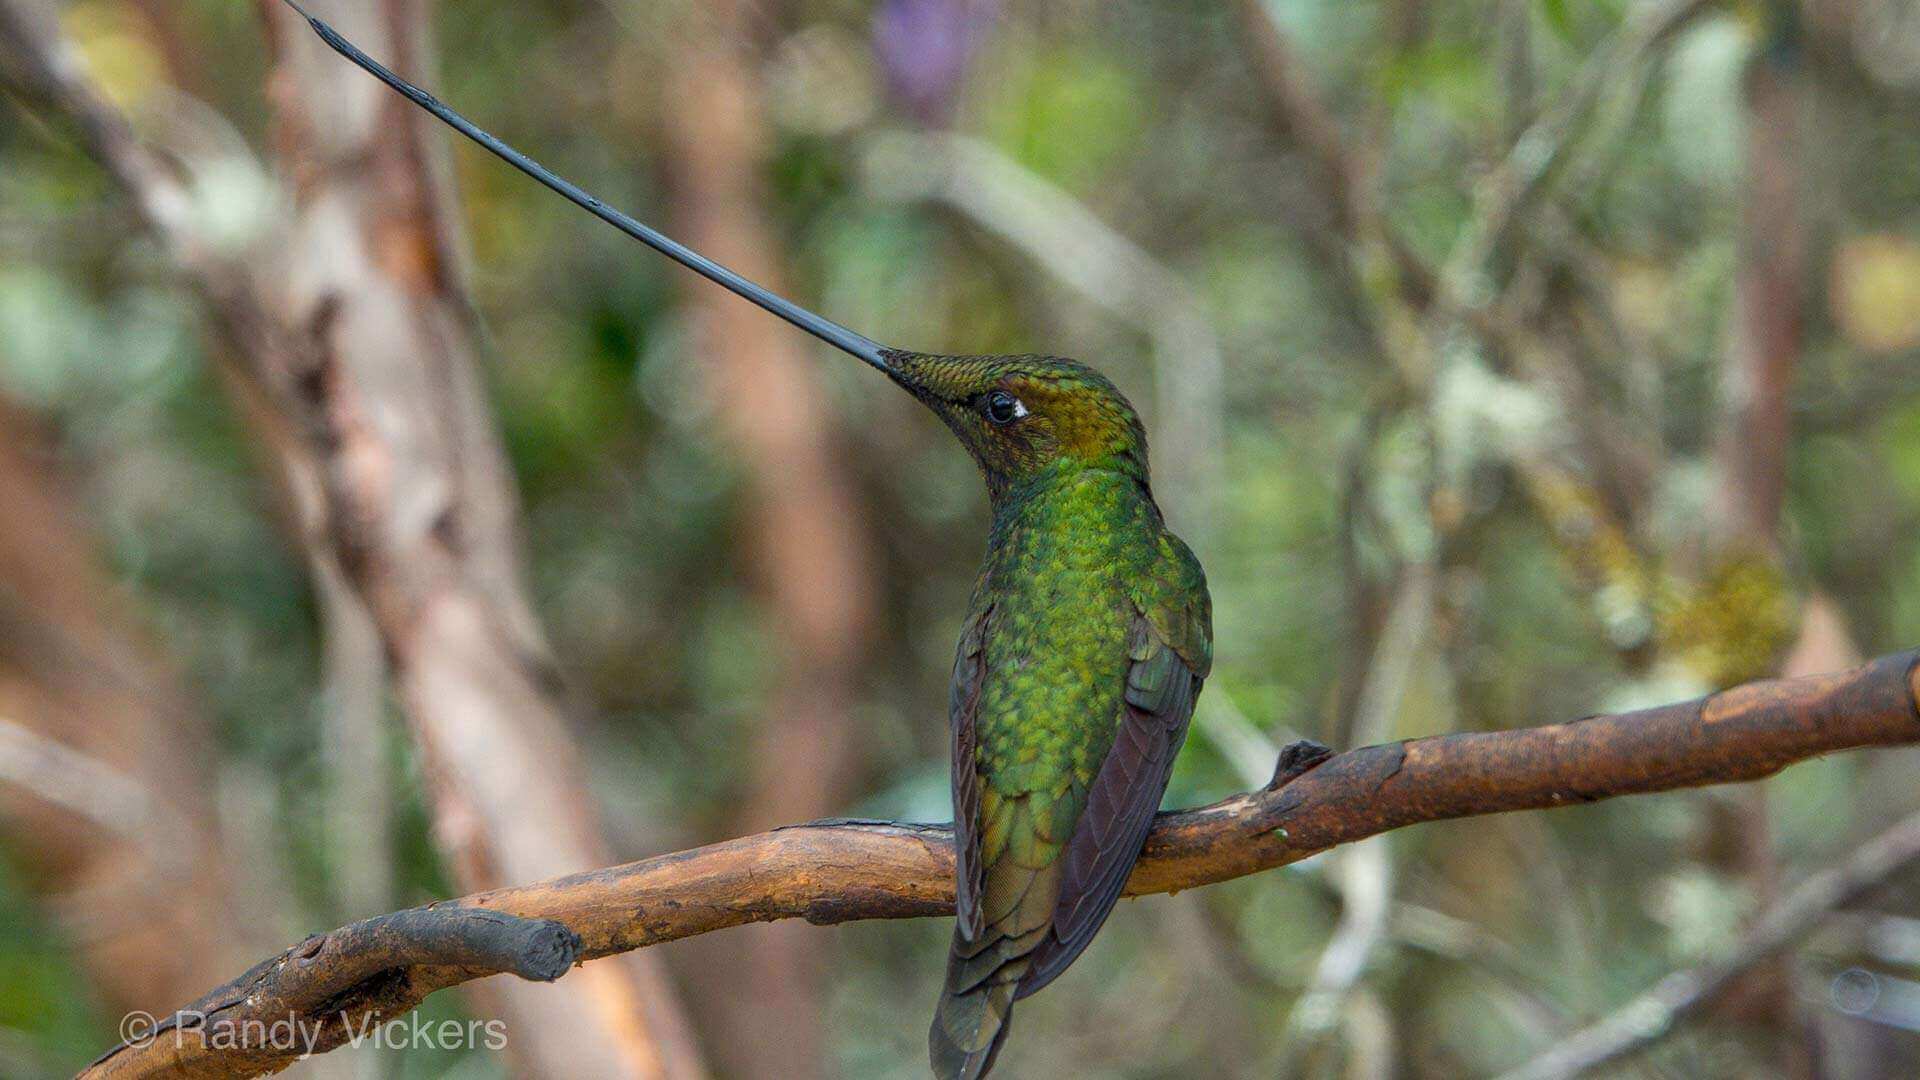 ecuador choco zwaardsnavel kolibrie met enorme snavel